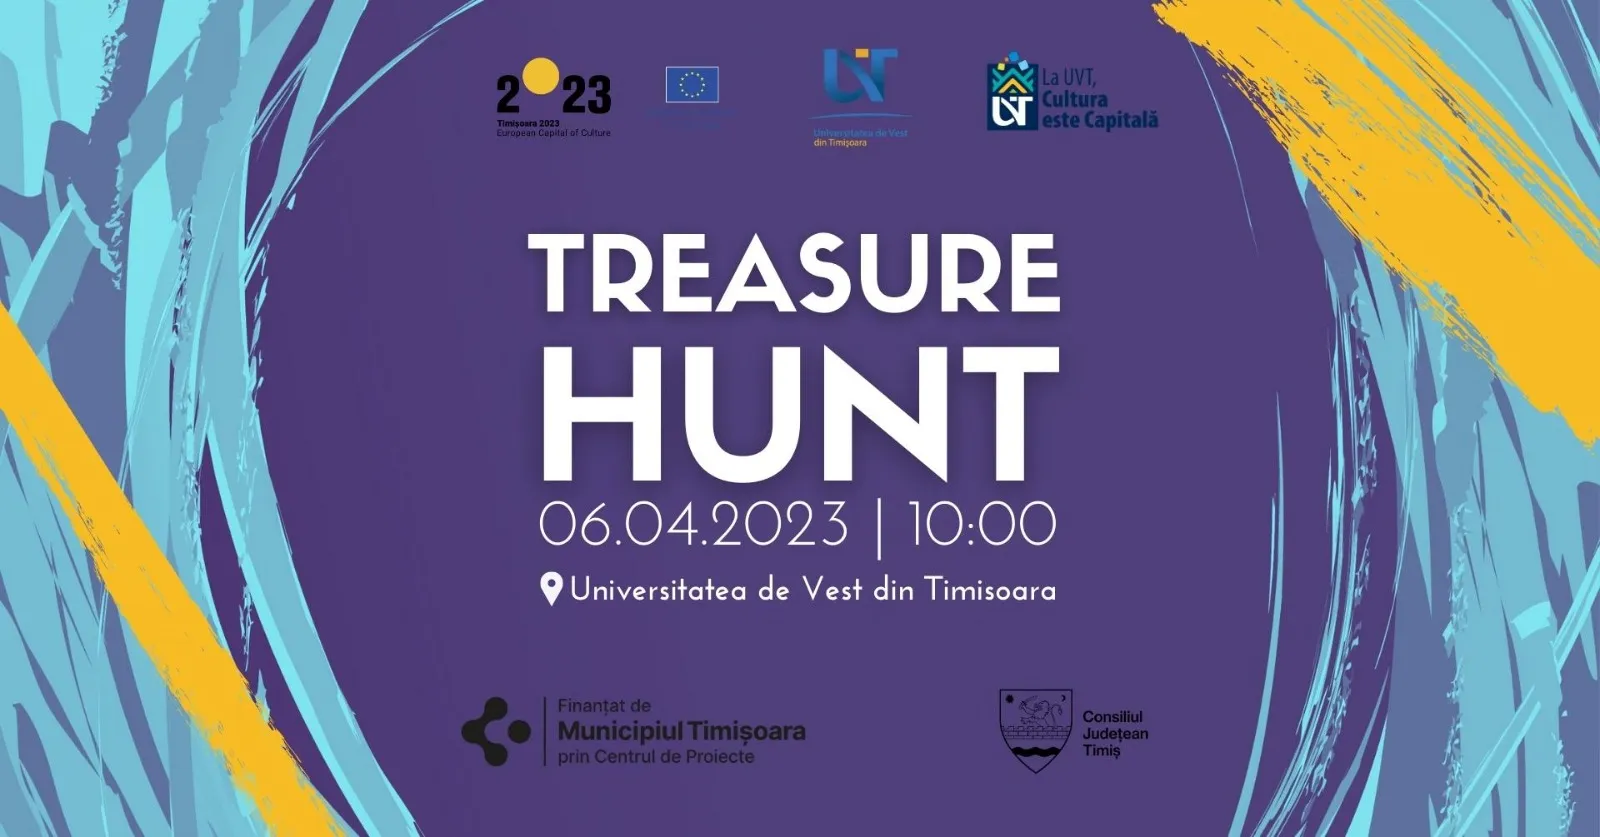 Treasure Hunt „La UVT, Cultura este Capitală!”